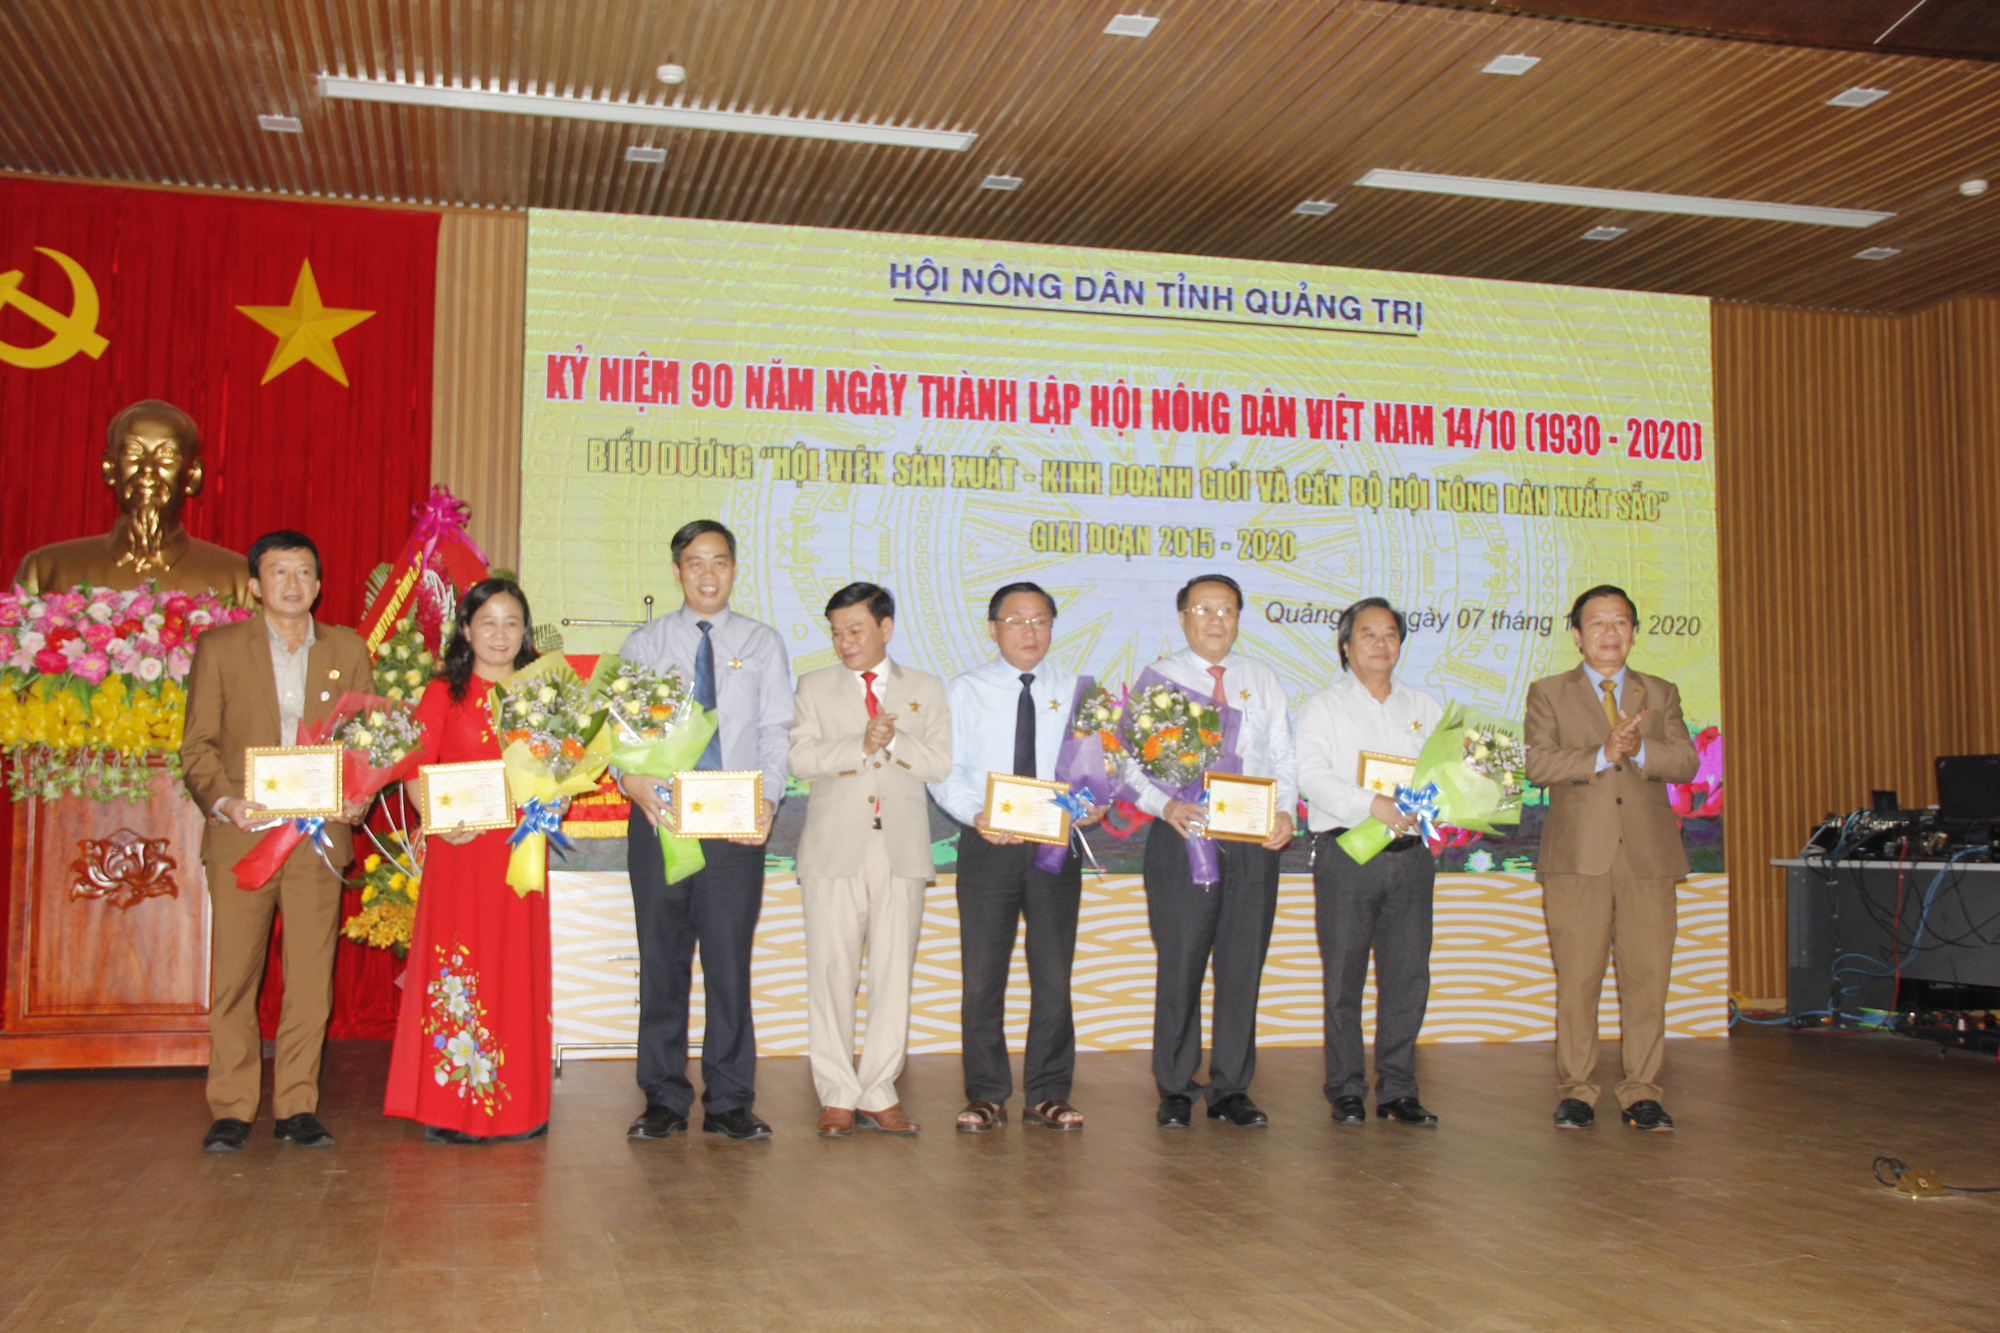 Hội Nông dân tỉnh Quảng Trị đóng góp gì cho sự phát triển của xã hội - Ảnh 3.